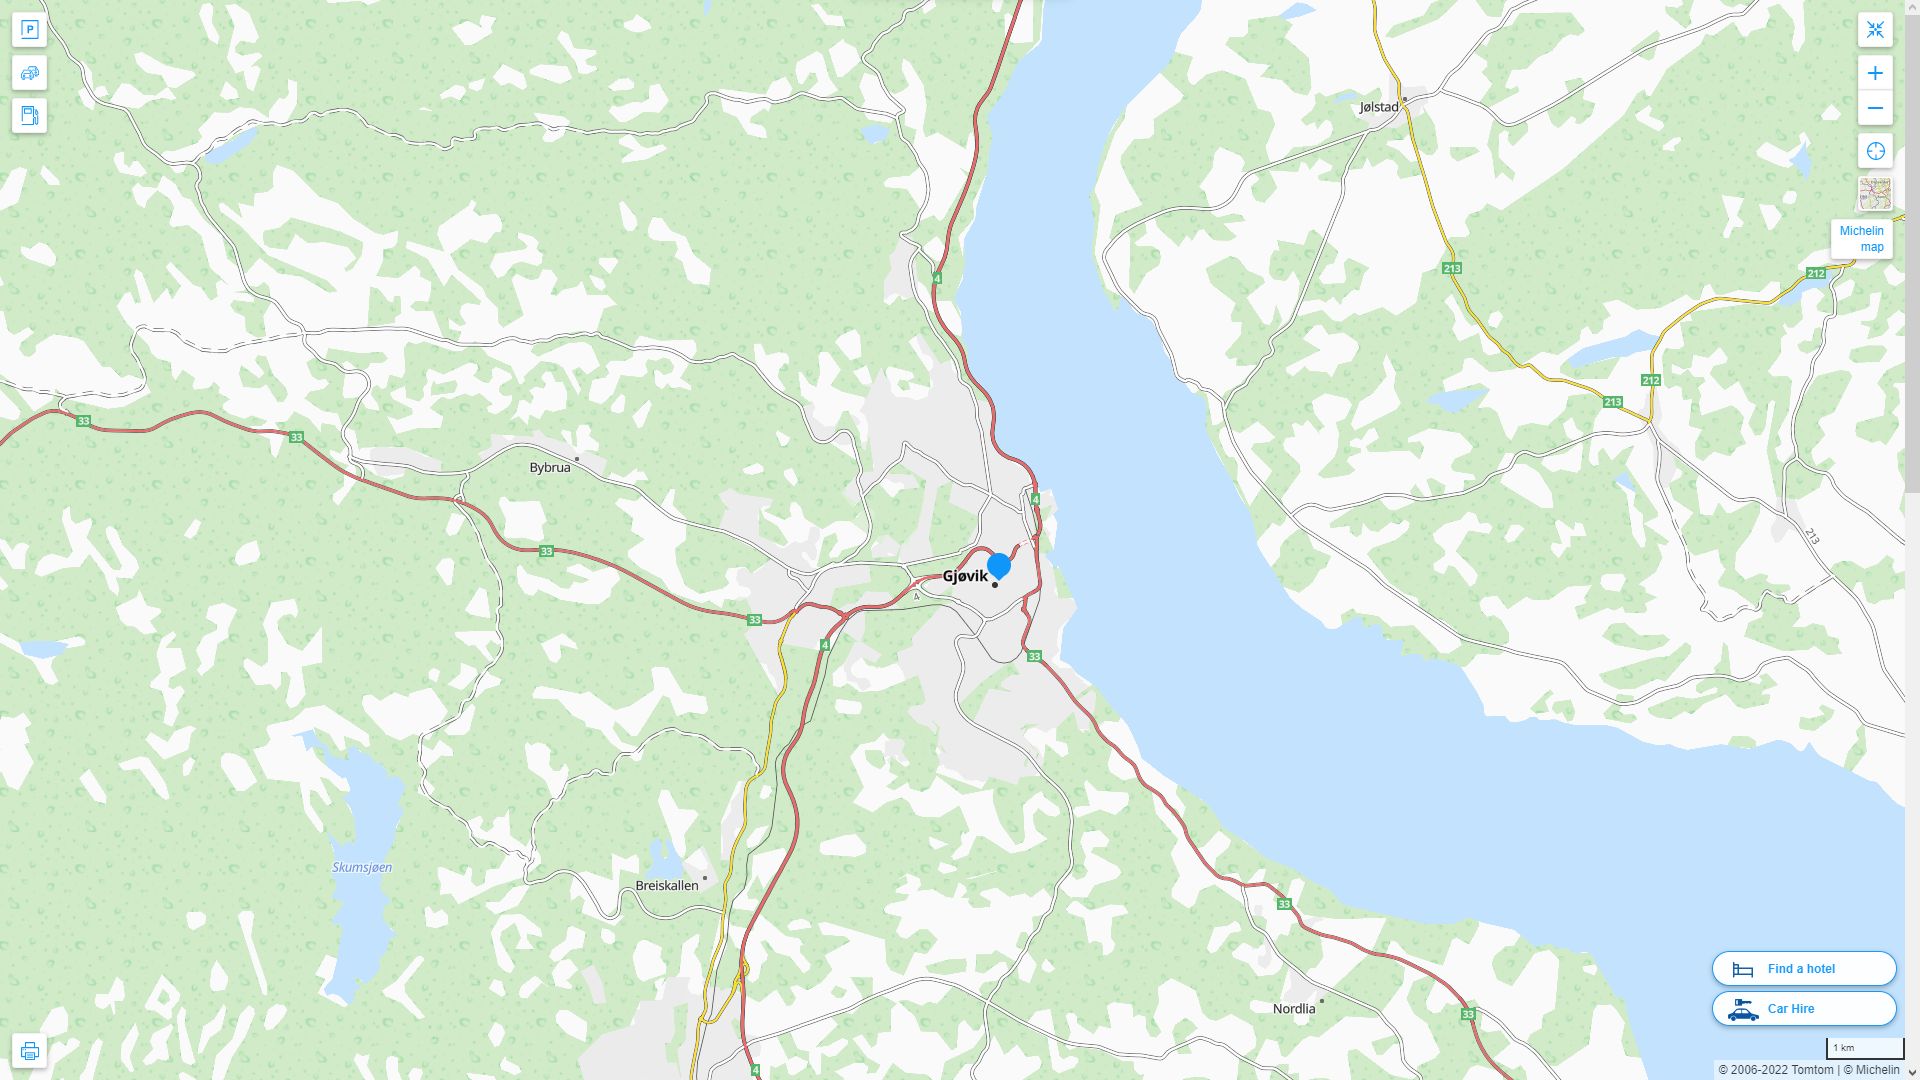 Gjovik Norvege Autoroute et carte routiere